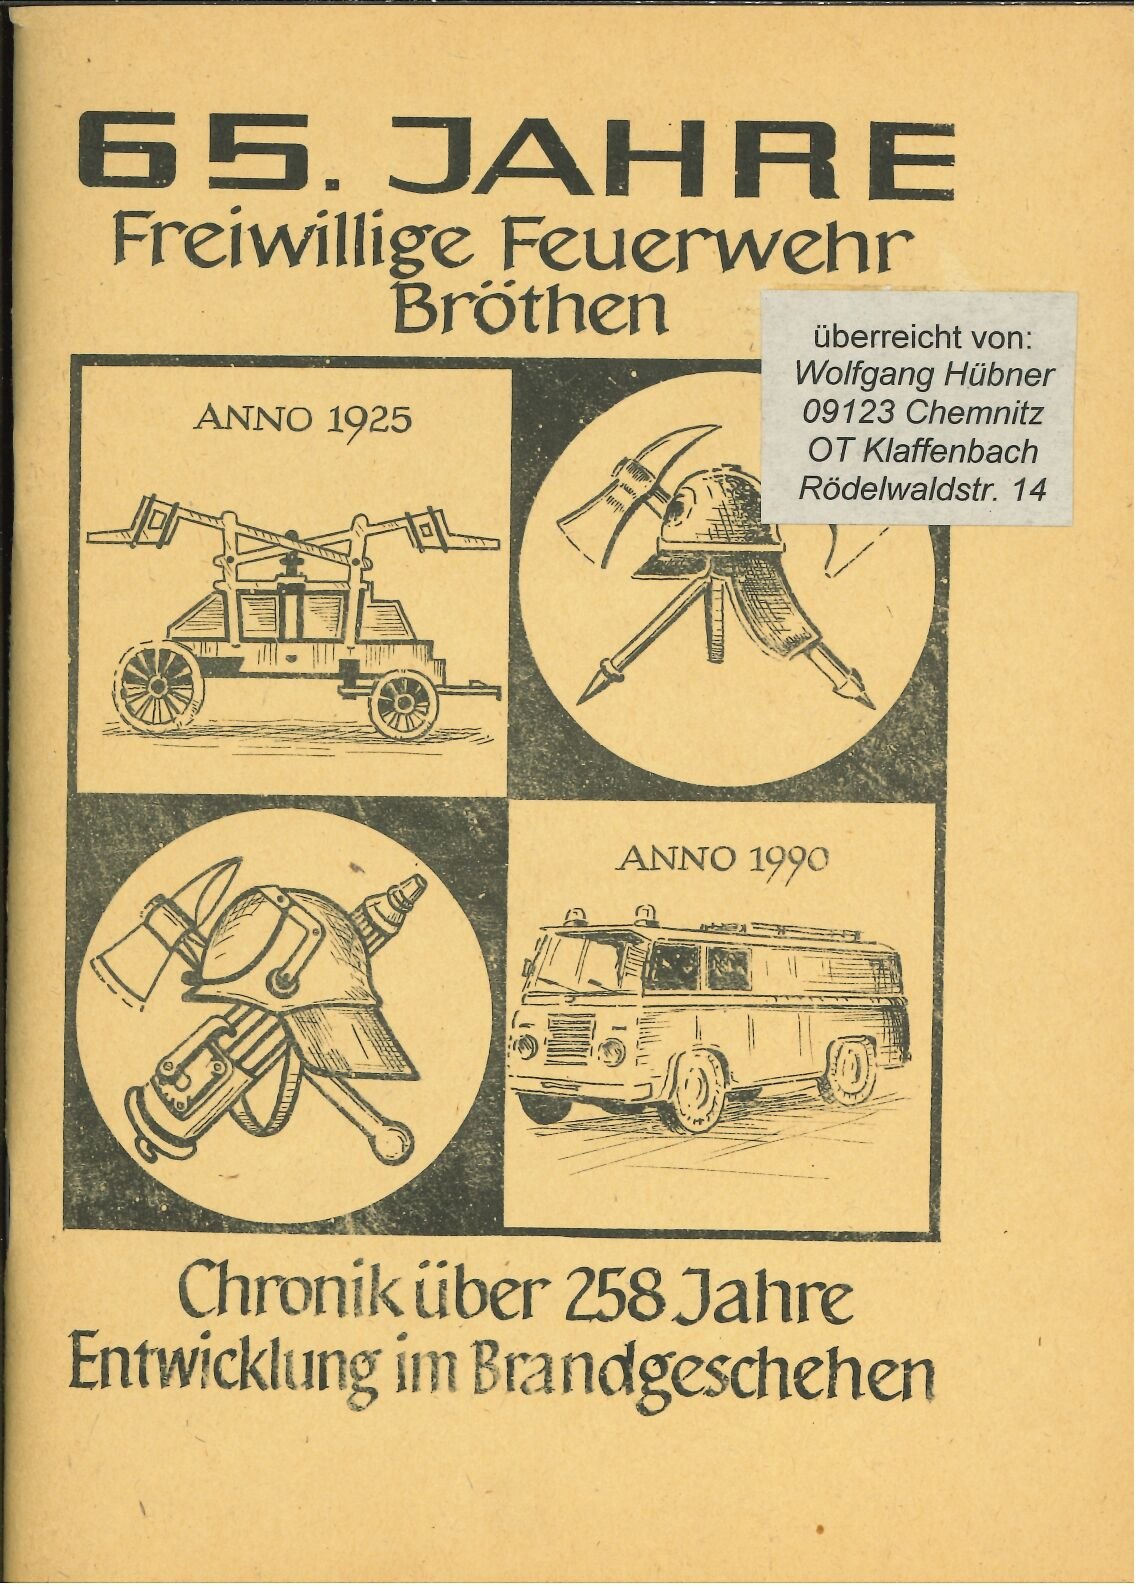 Festschrift FF Bröthen (Feuerwehrmuseum Grethen CC BY-NC-SA)